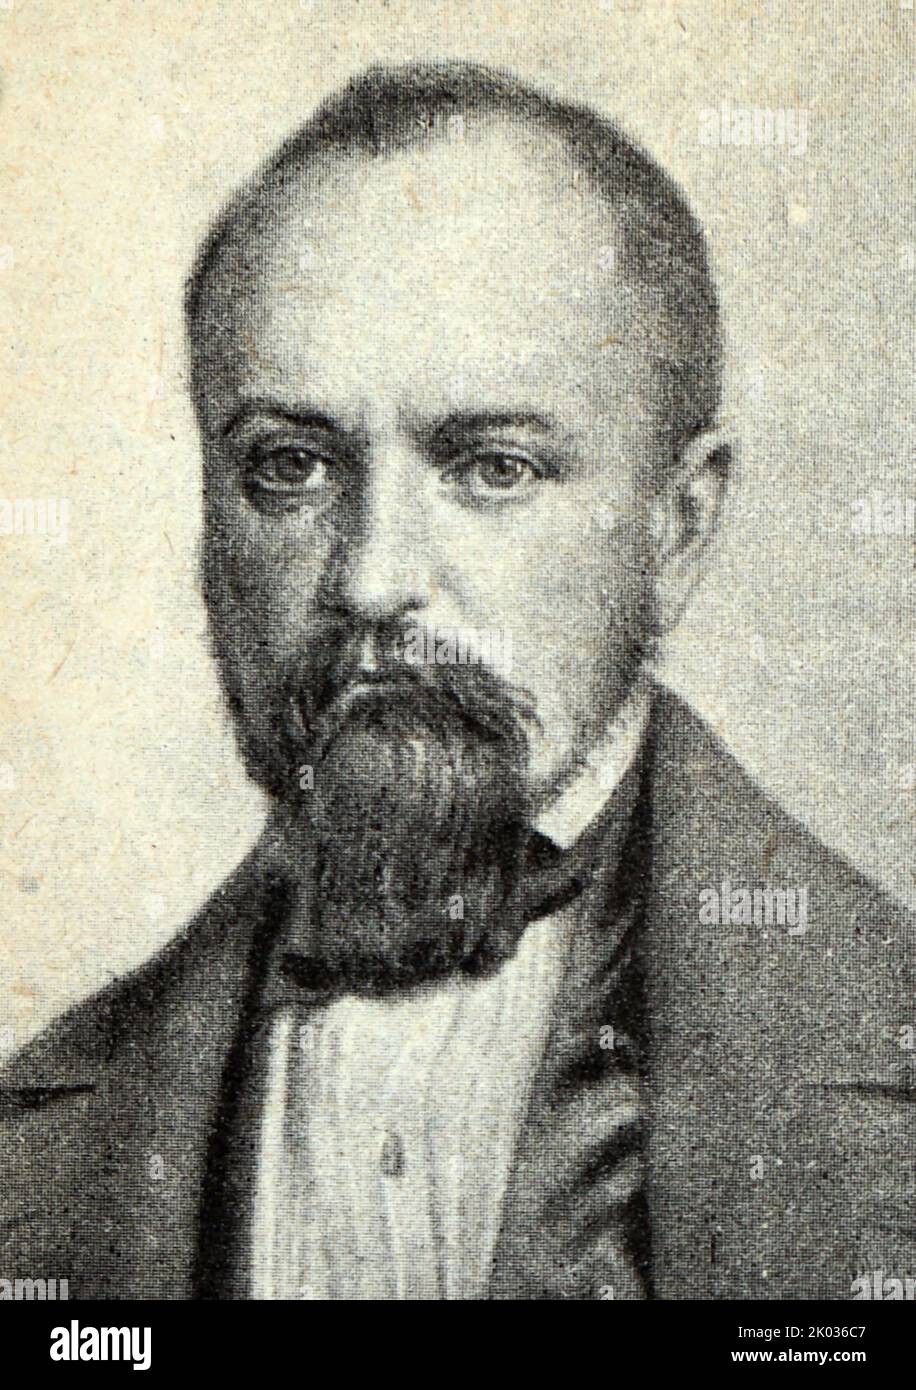 Alexander Ivanovich Herzen (1812 - 1870) russischer Schriftsteller und Denker, bekannt als der "Vater des russischen Sozialismus" Stockfoto